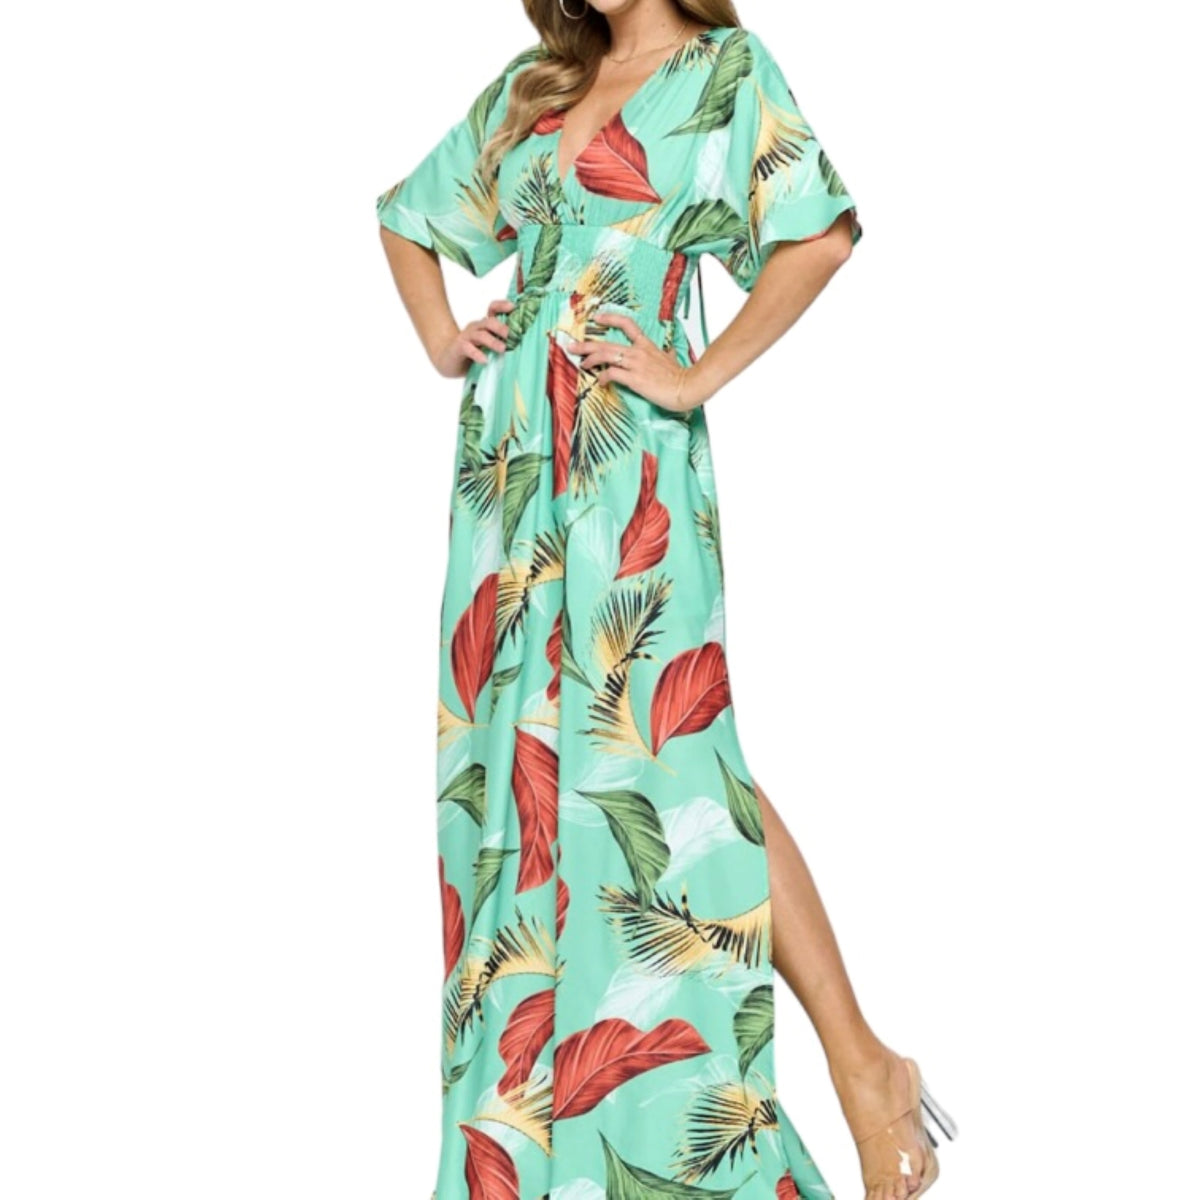 Rehaussez votre style avec notre robe tropicale longue ! Des grosses feuilles sur un fond vert, cette robe vous transportera instantanément sous les tropiques. Profitez des degrés de confort et de légèreté grâce à sa matière de qualité supérieure. Un incontournable pour une tenue estivale élégante et décontractée.